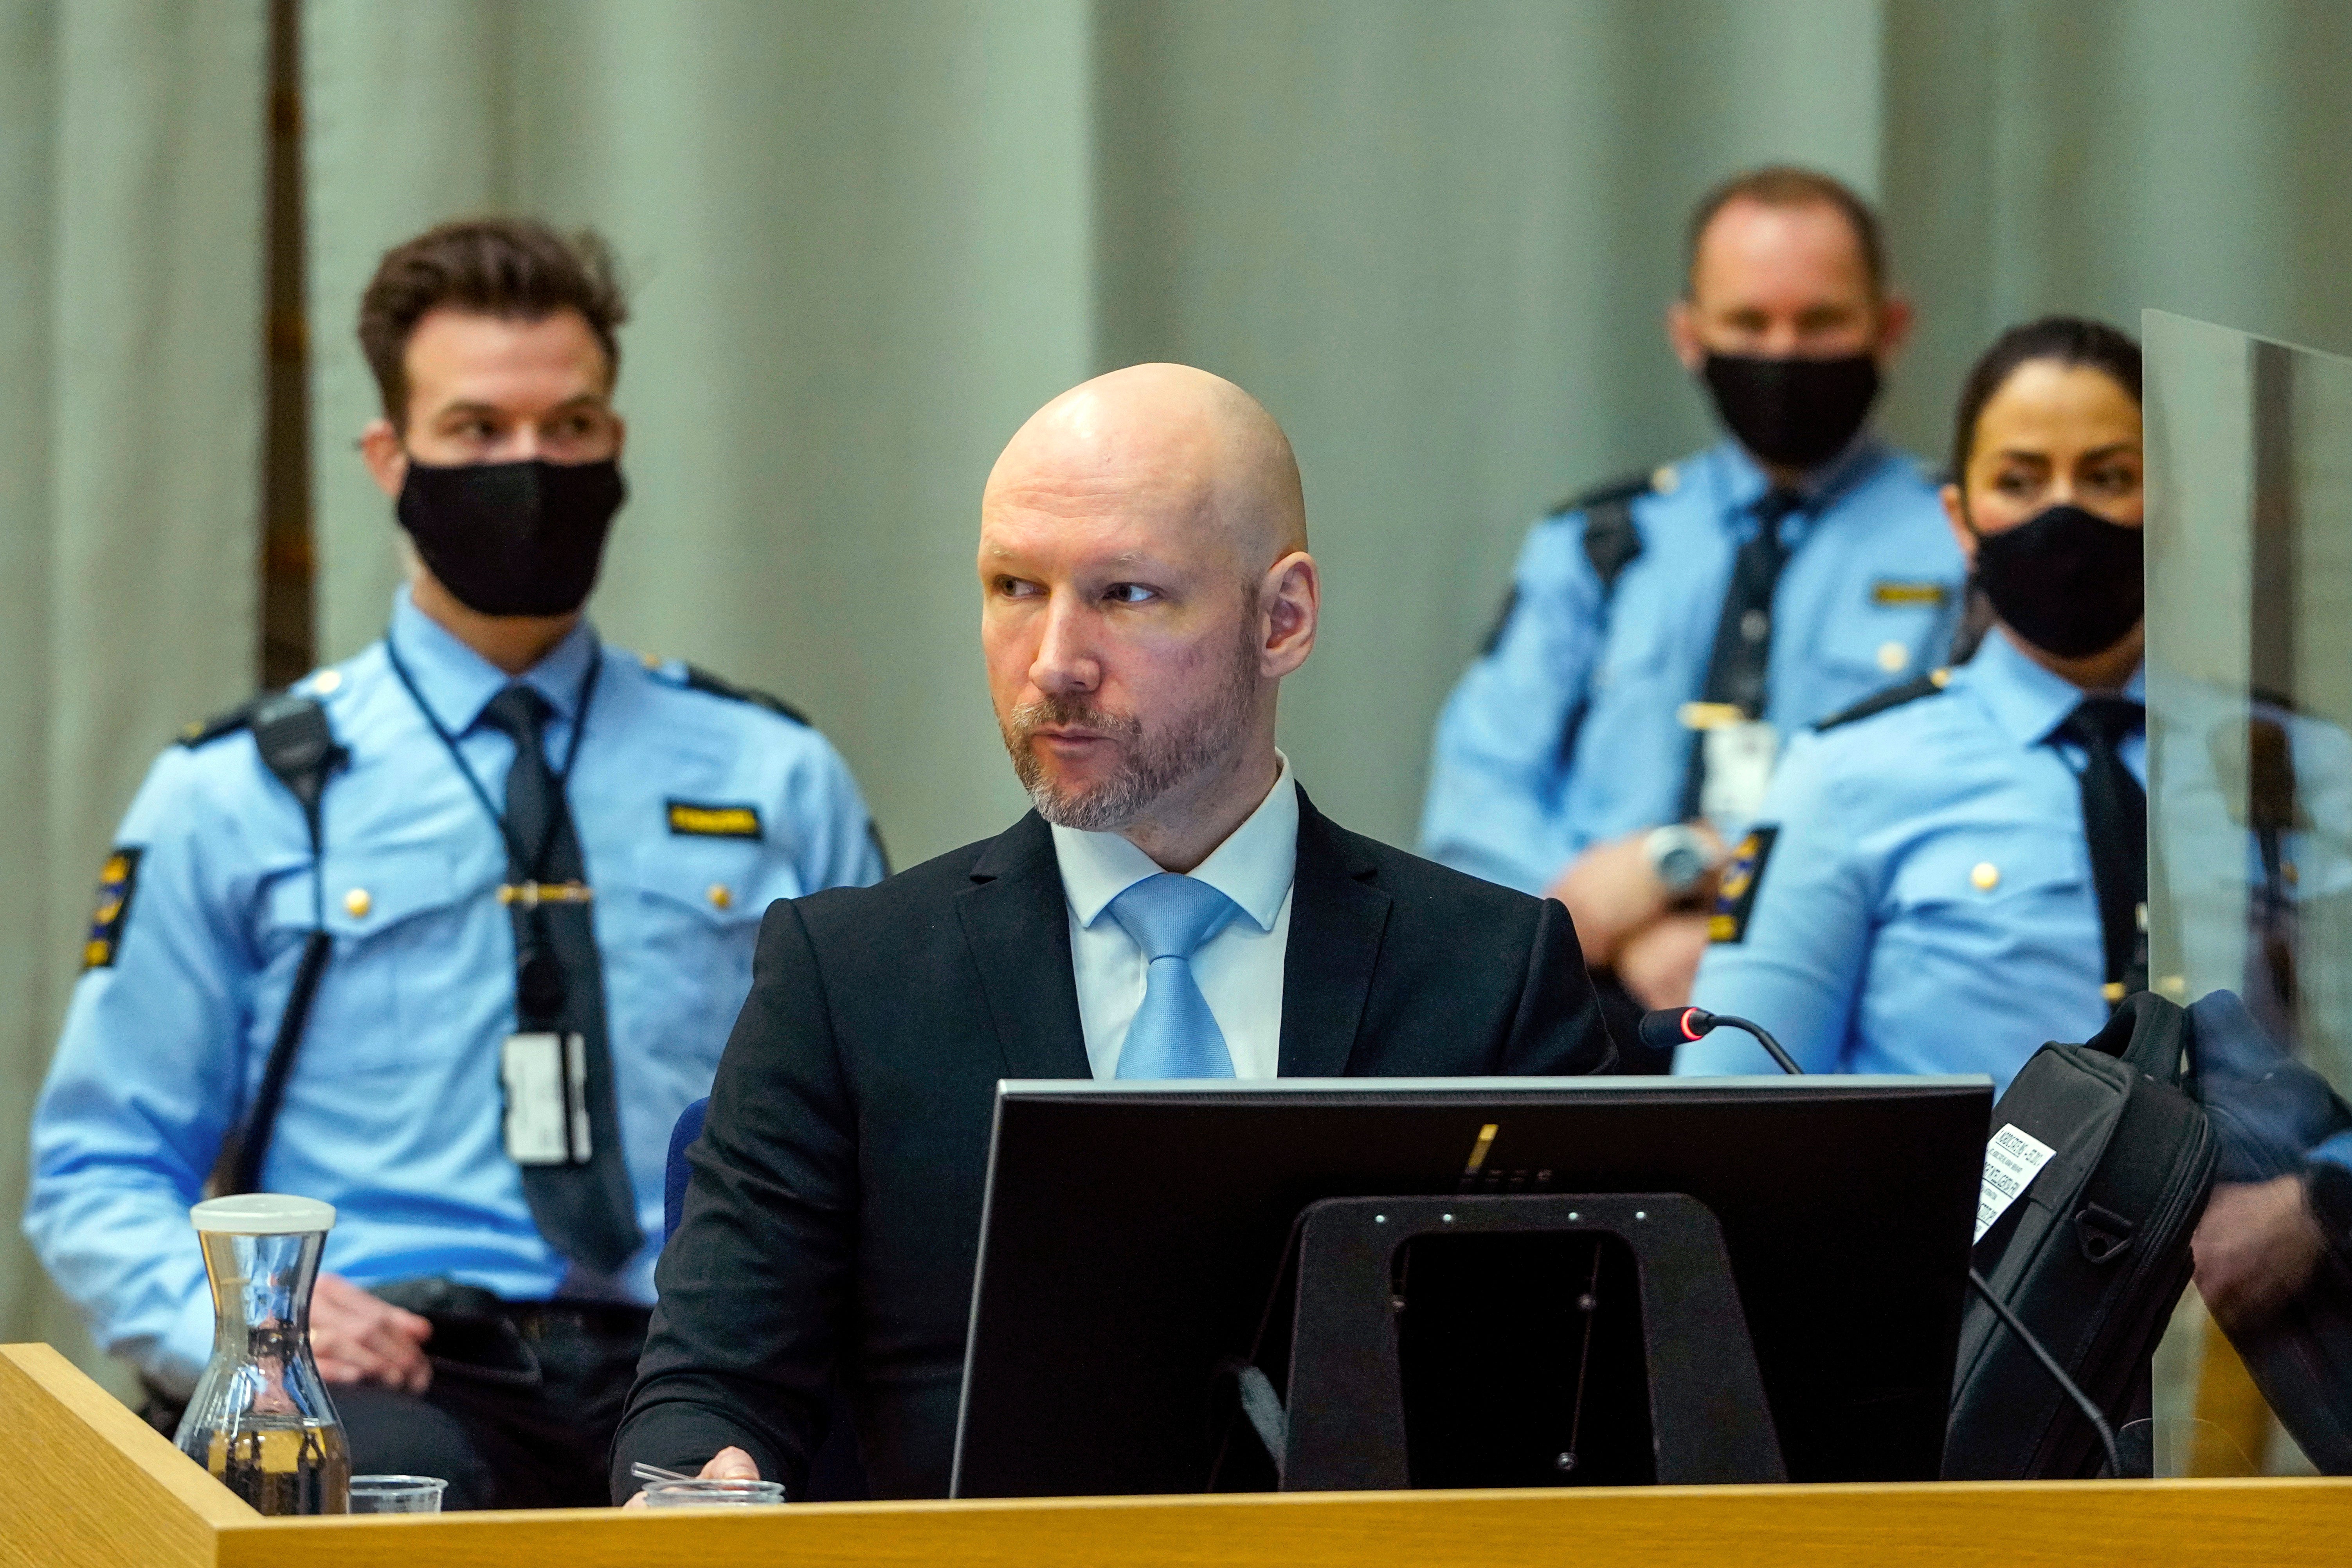 Breivik in court on Thursday